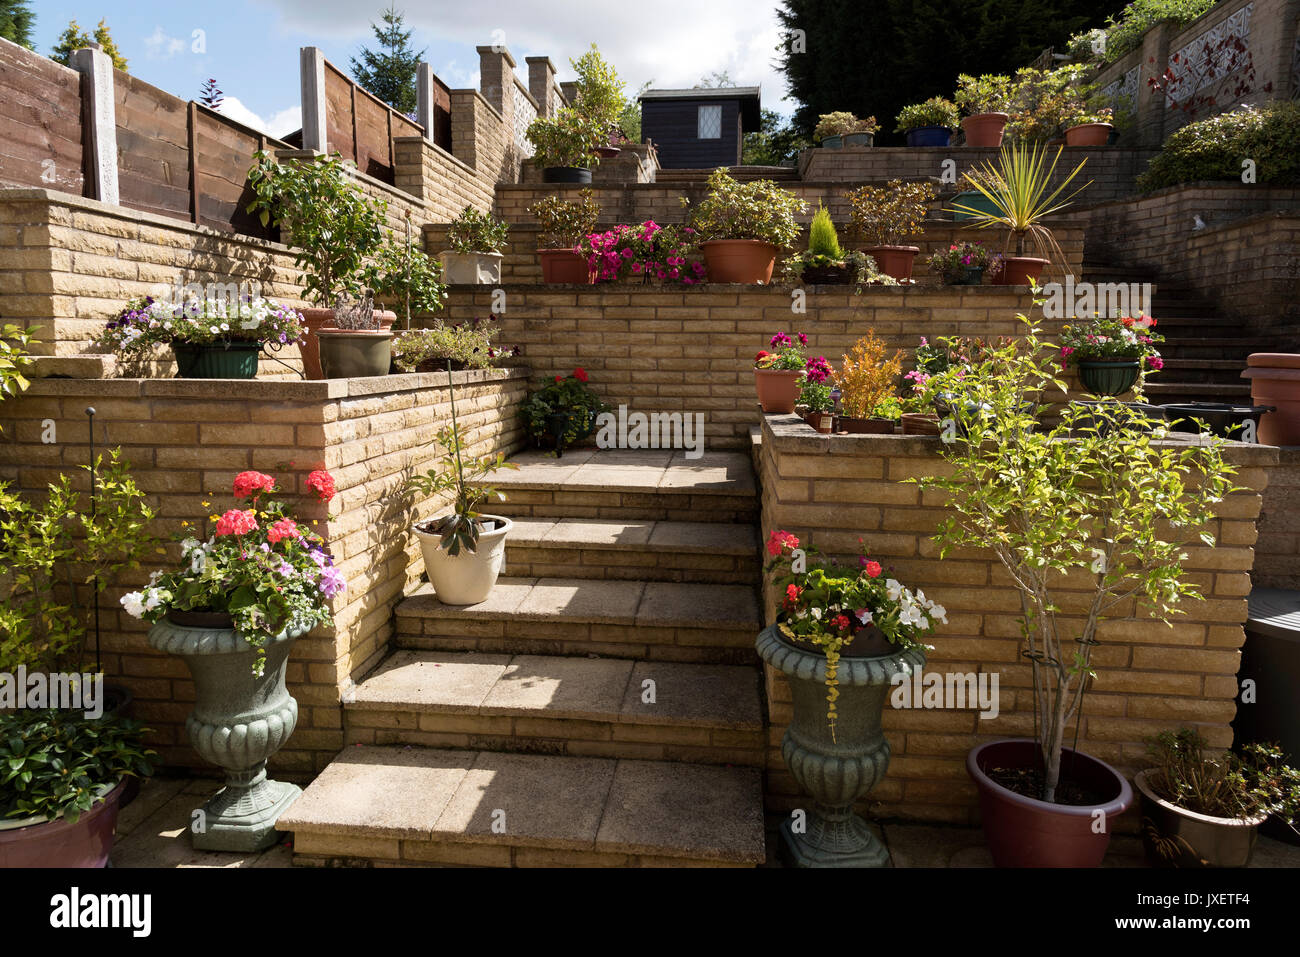 Jardin de banlieue construit avec des murs en brique d'une colline. Solihull Birmingham UK Banque D'Images